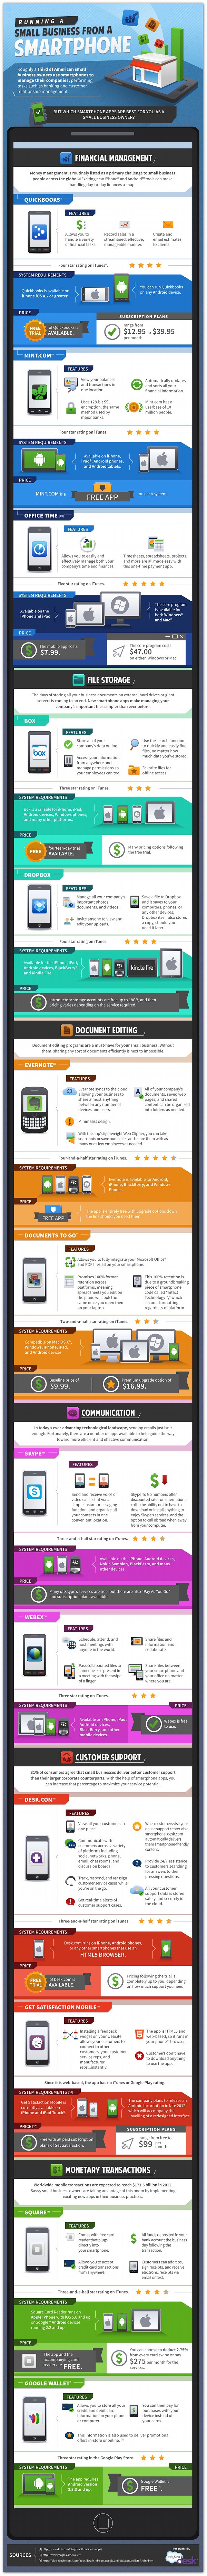 Infografía: 13 apps para gestionar el negocio desde tu smartphone